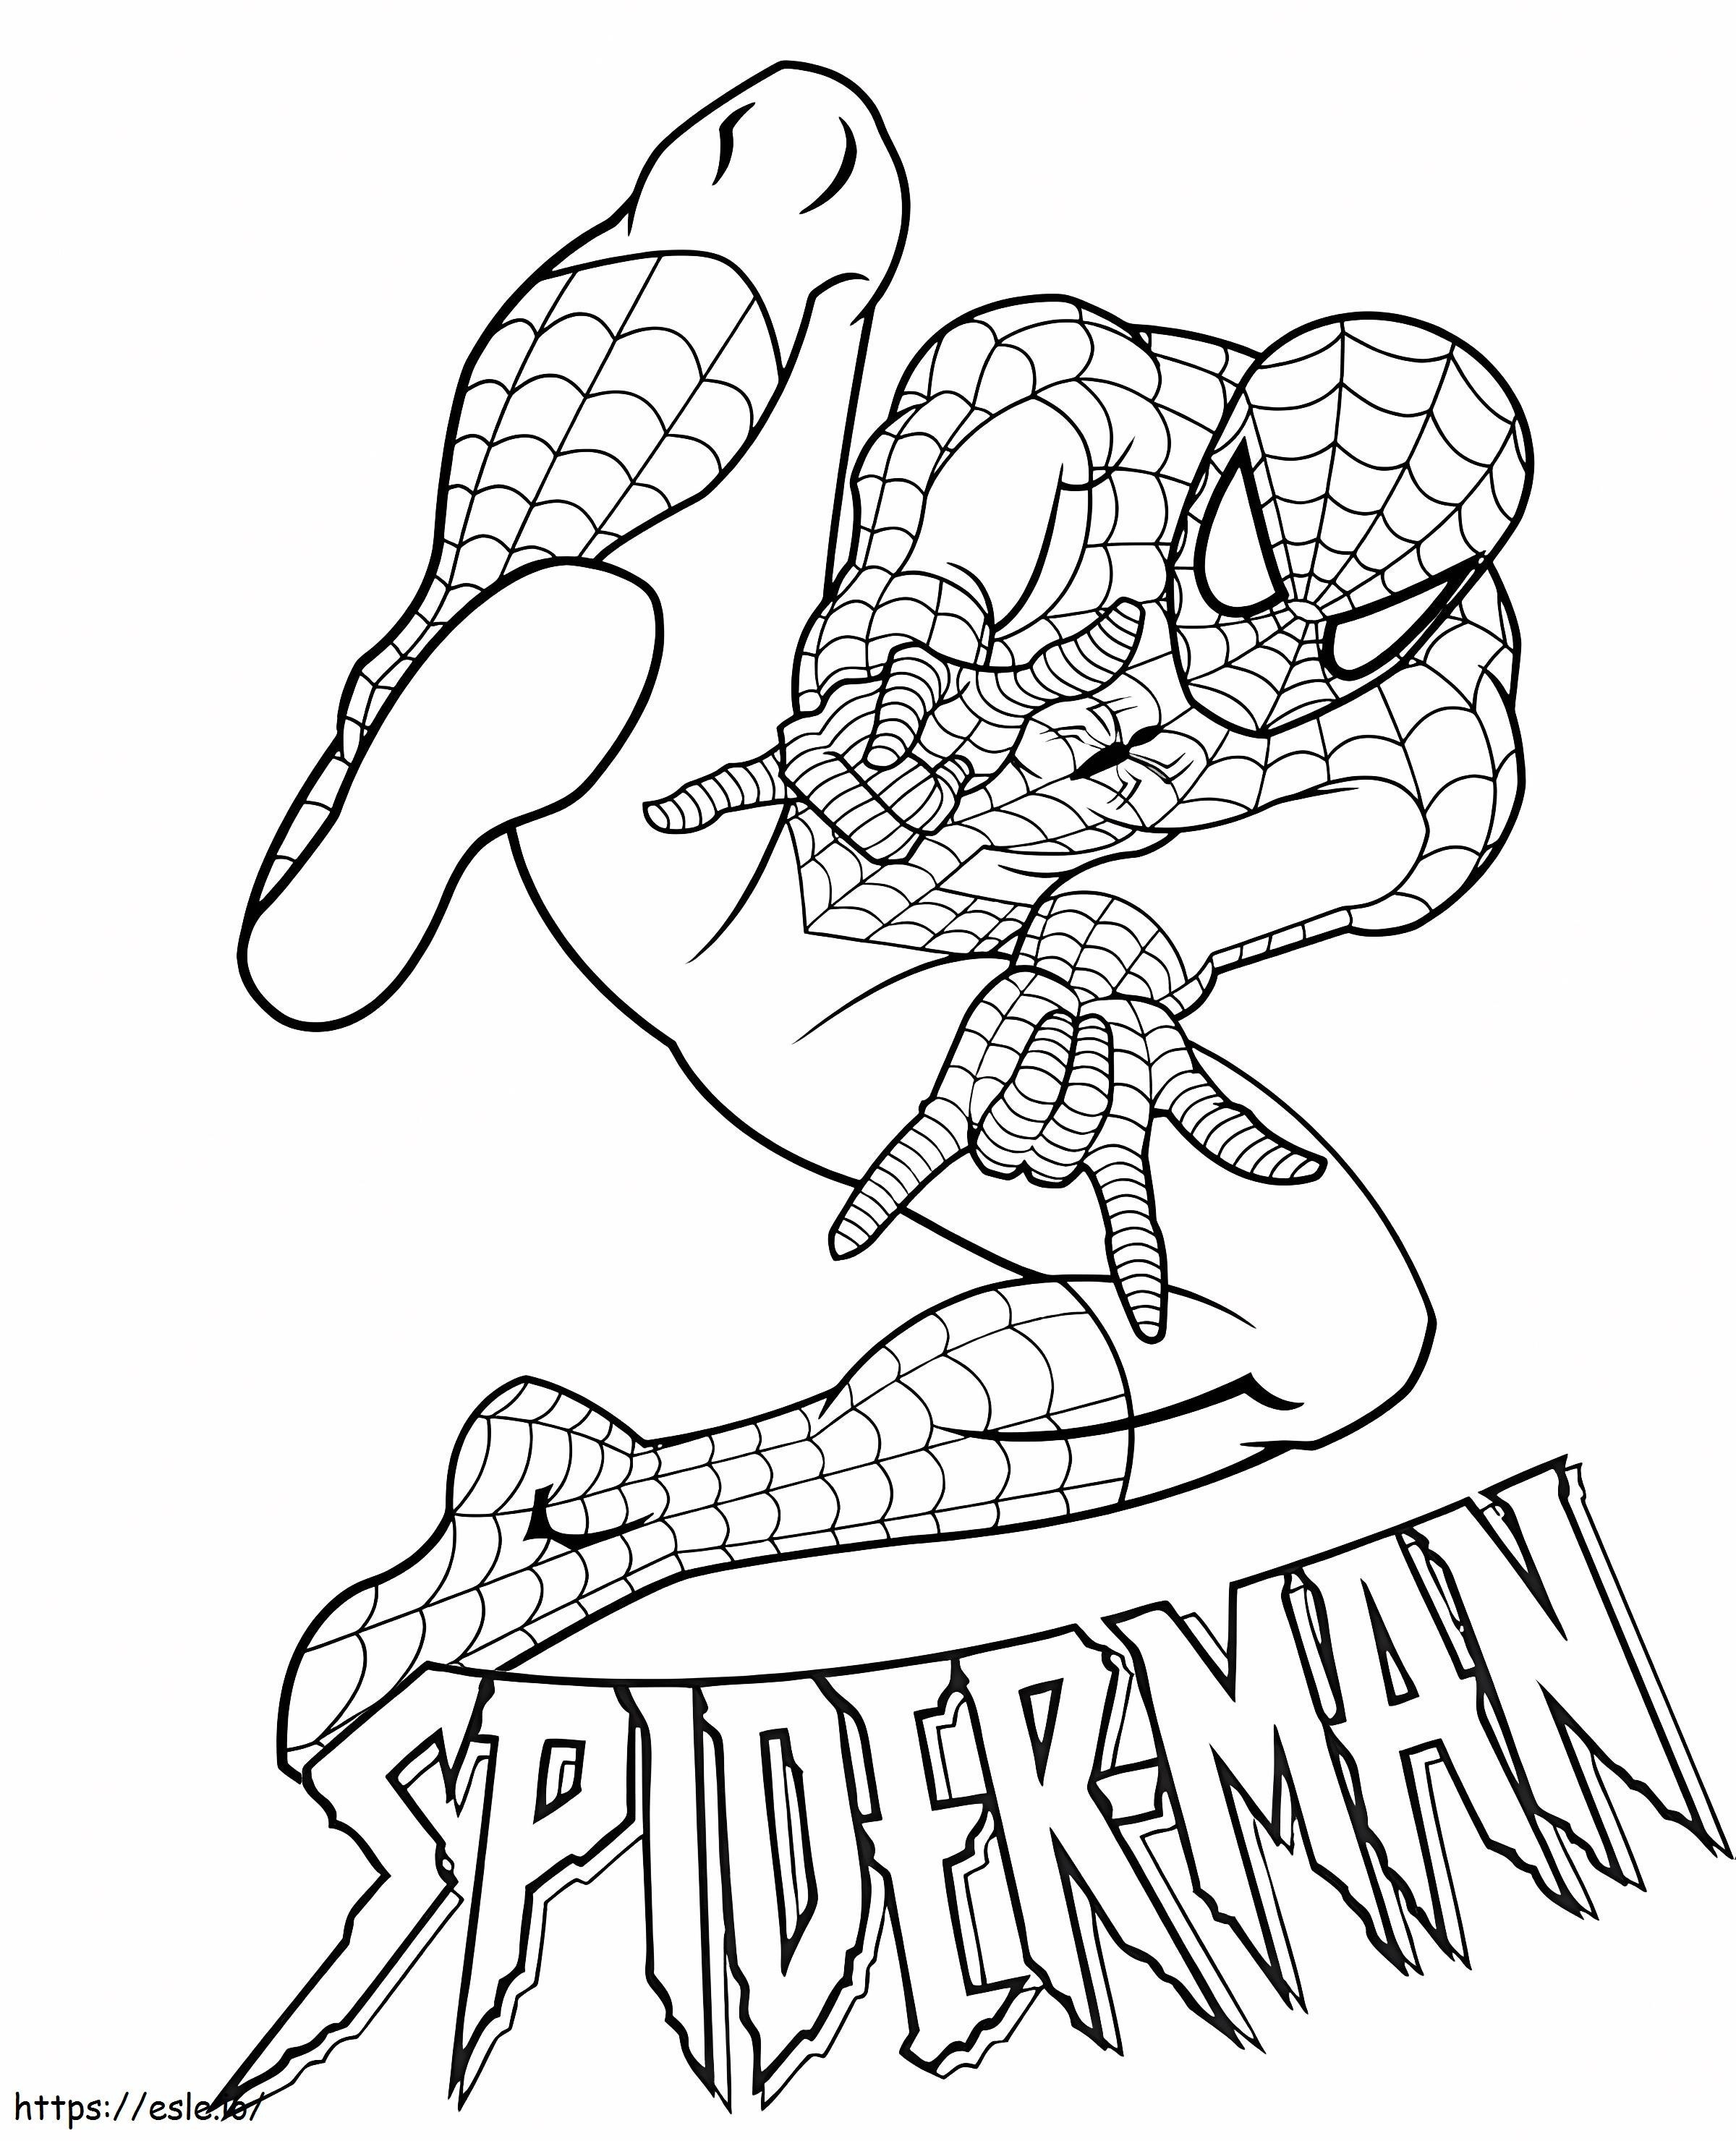 Coloriage 1526807197 Spiderman Gratuit à imprimer dessin